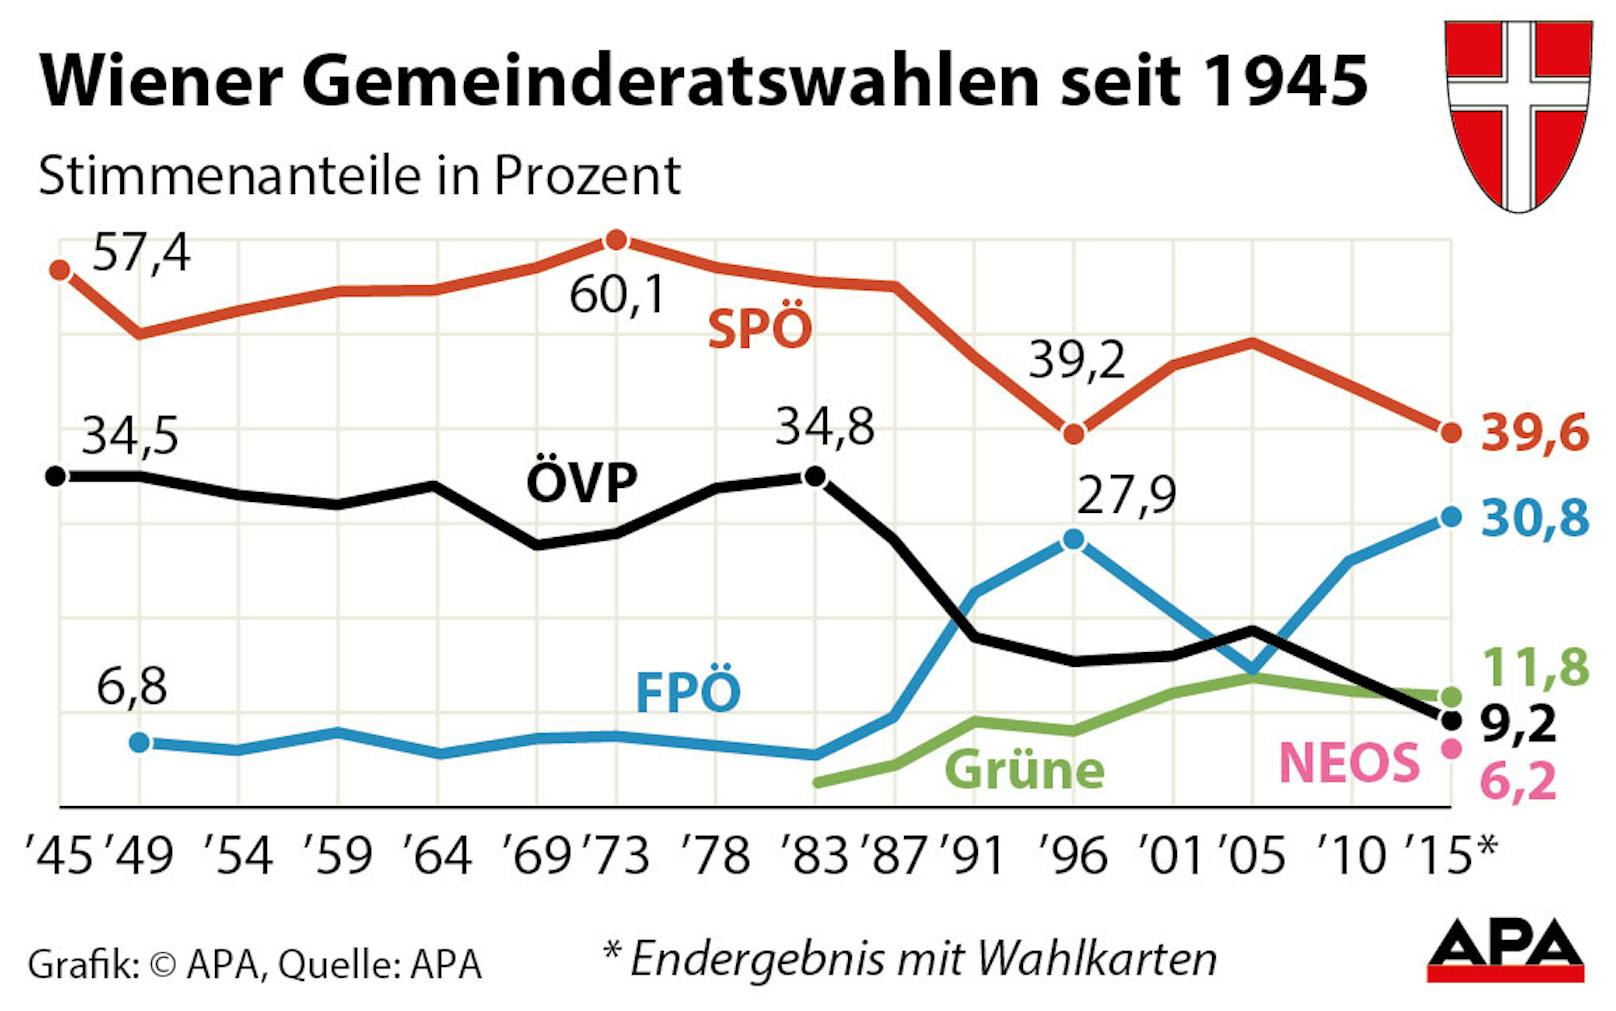 Wiener Gemeinderatswahlen seit 1945